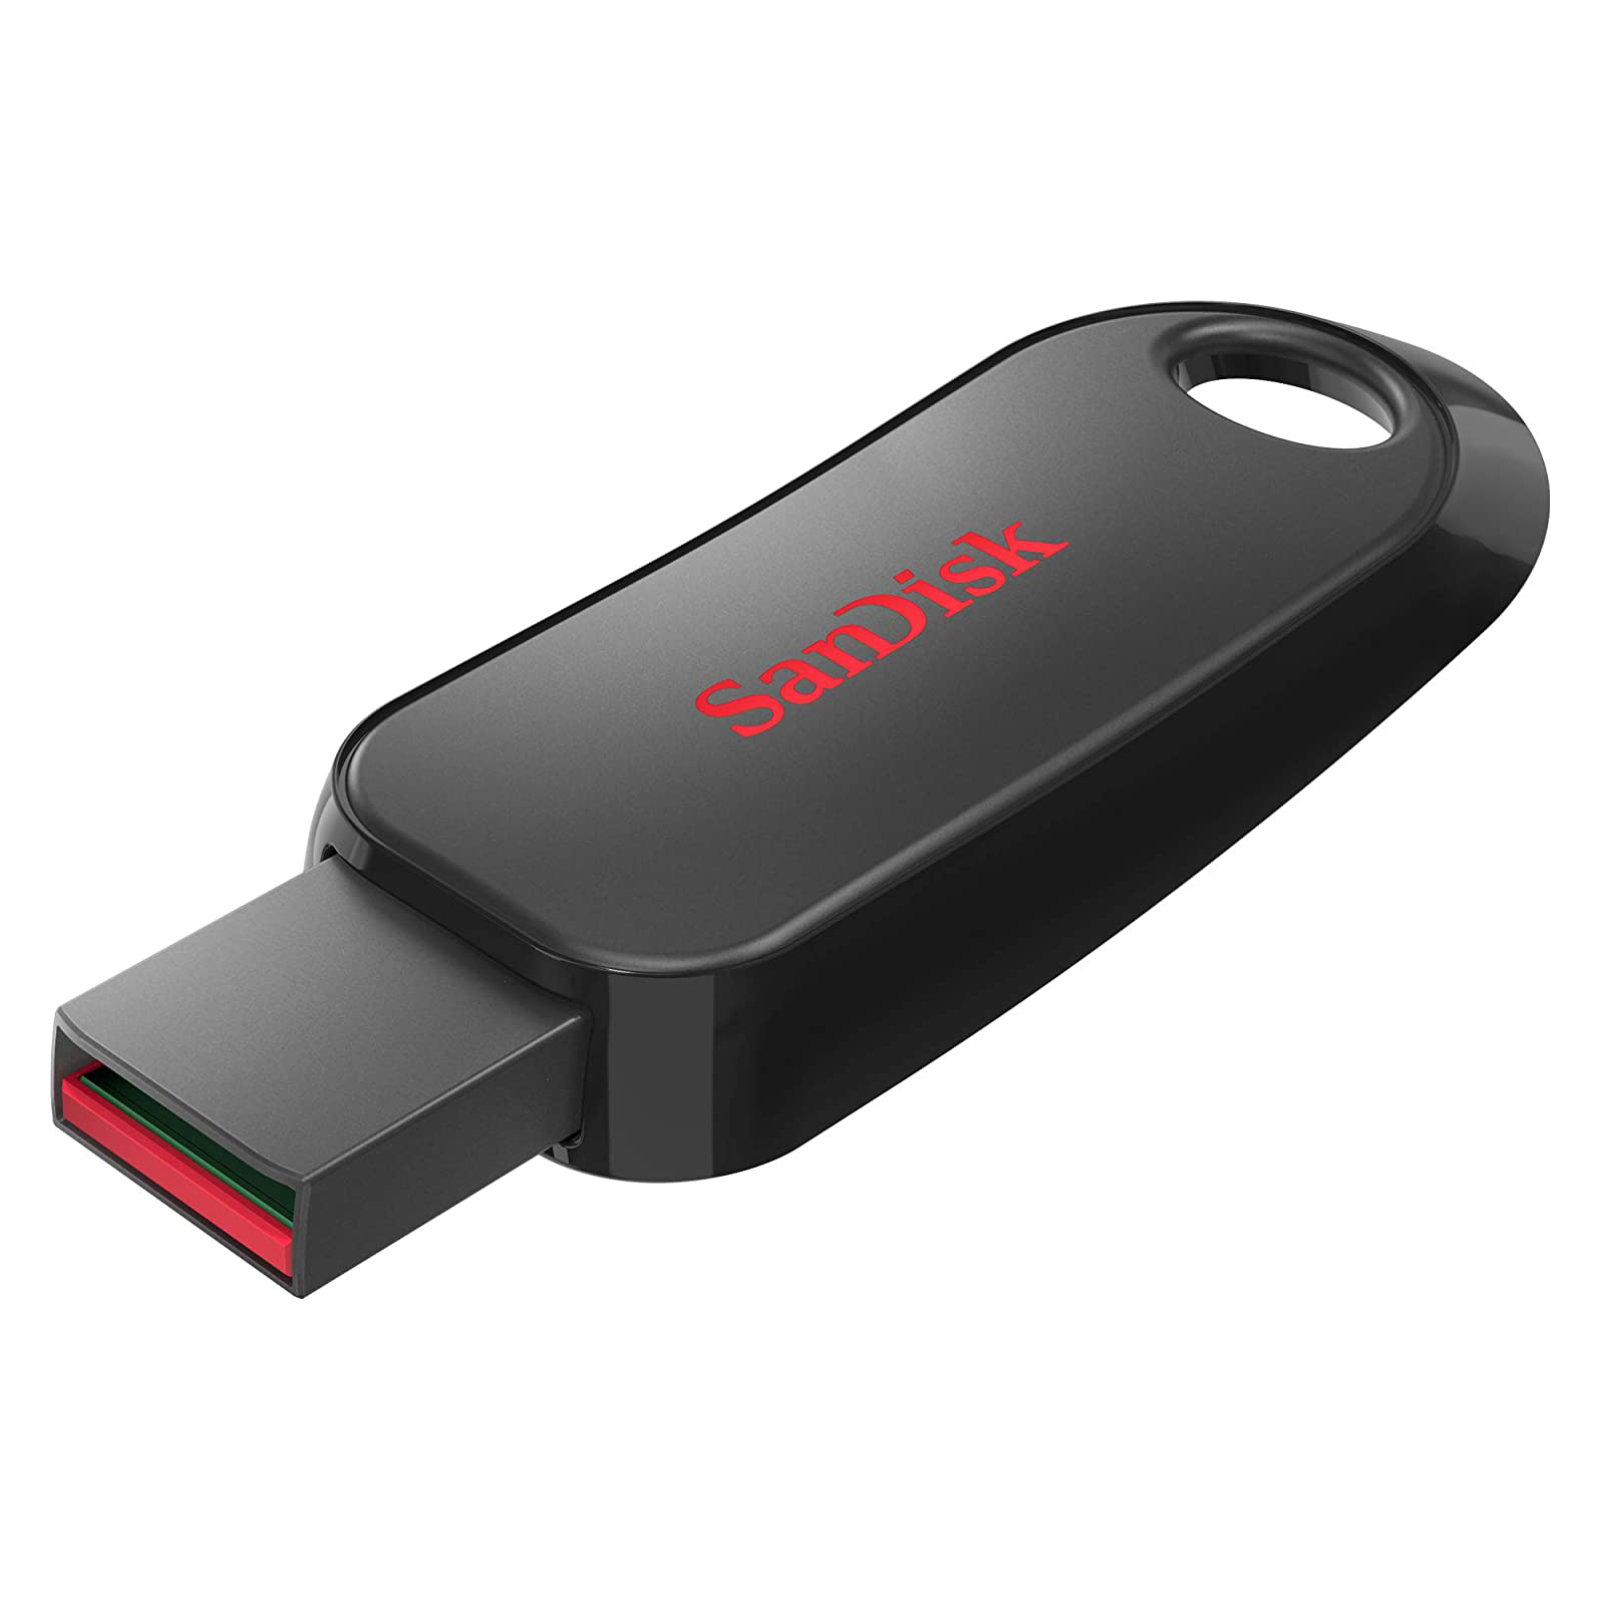 USB флеш накопитель SanDisk 128GB Snap USB 2.0 (SDCZ62-128G-G35)